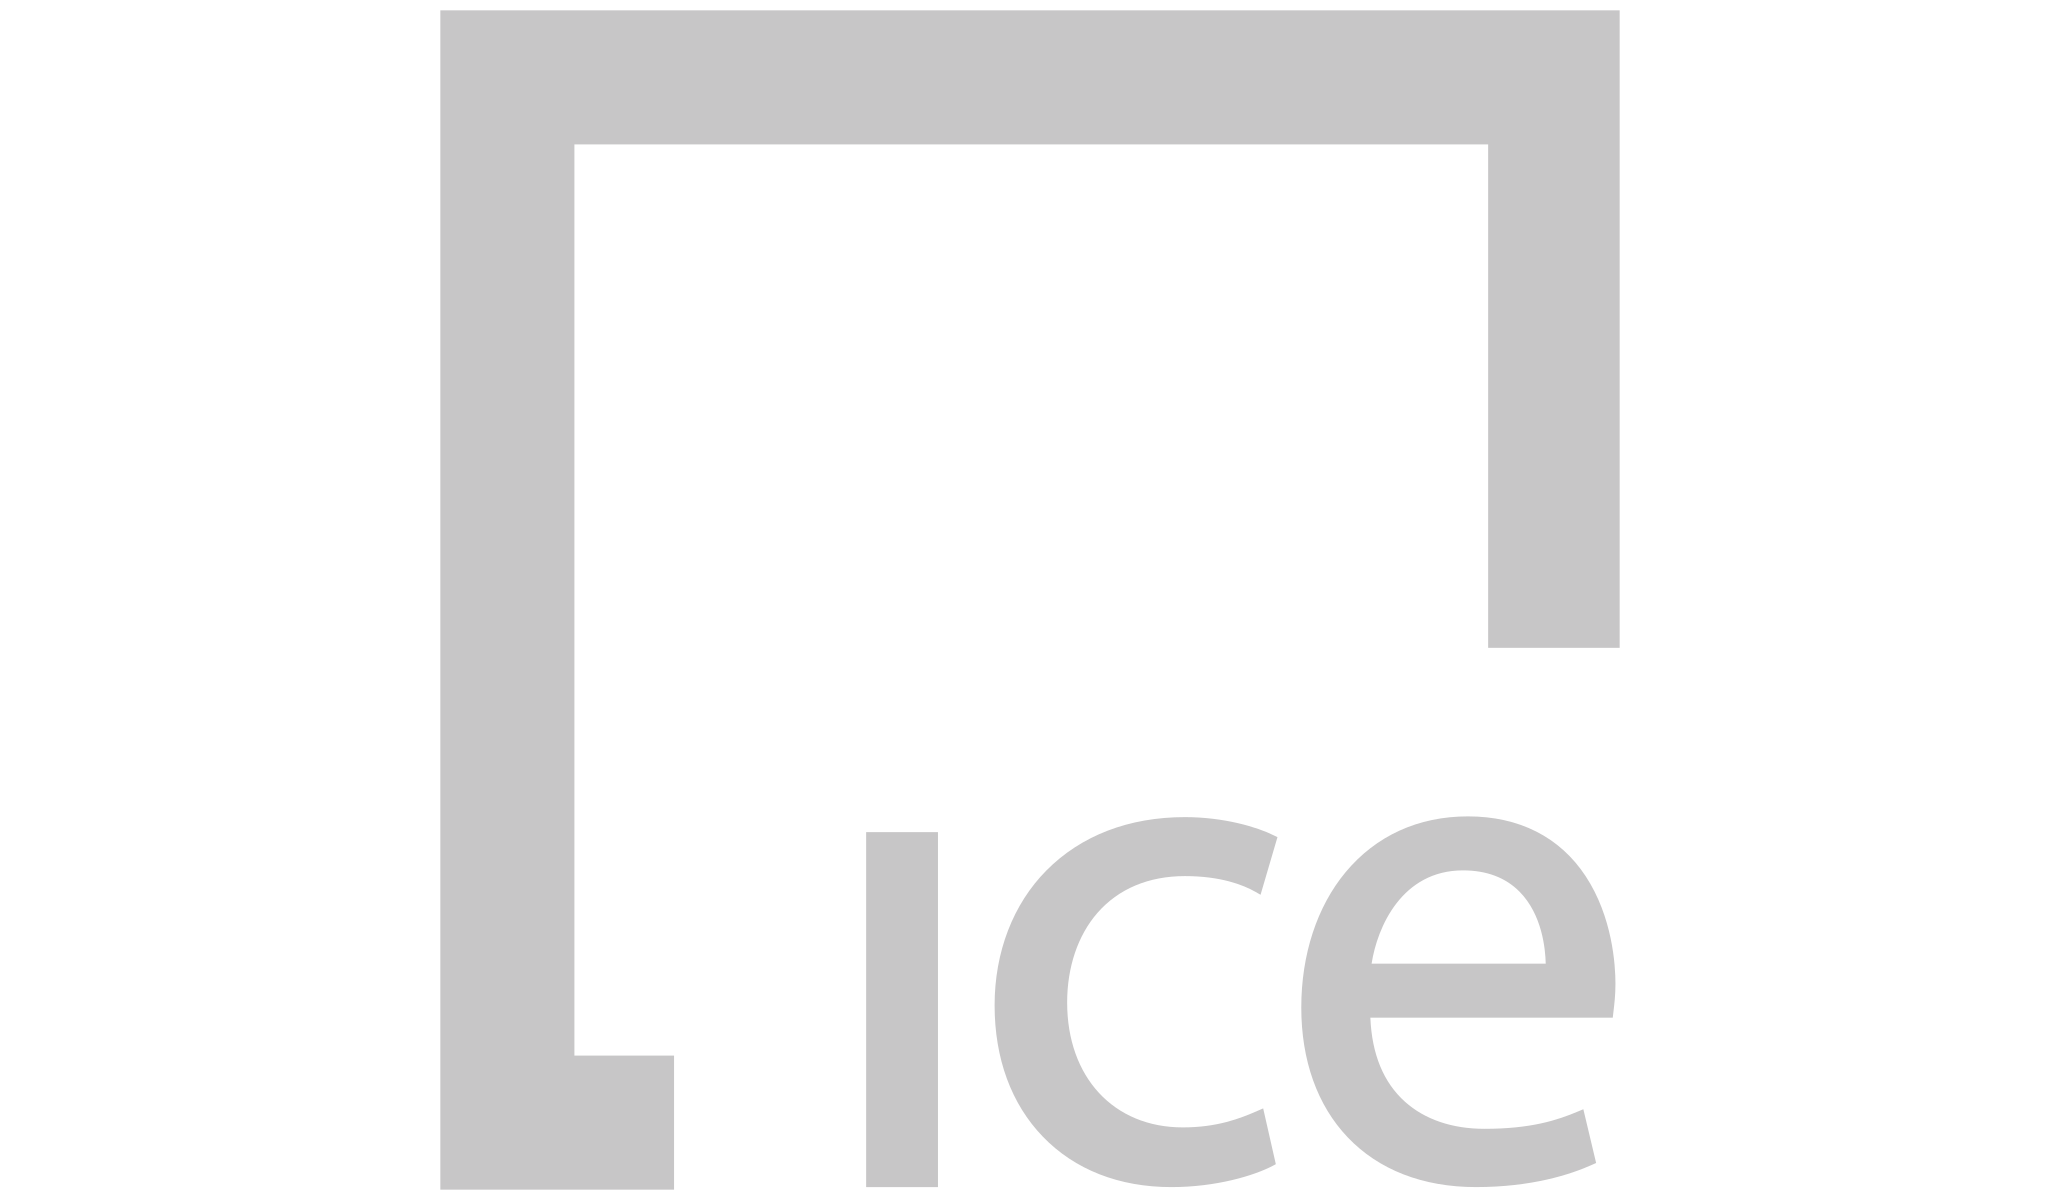 Ice logo 2